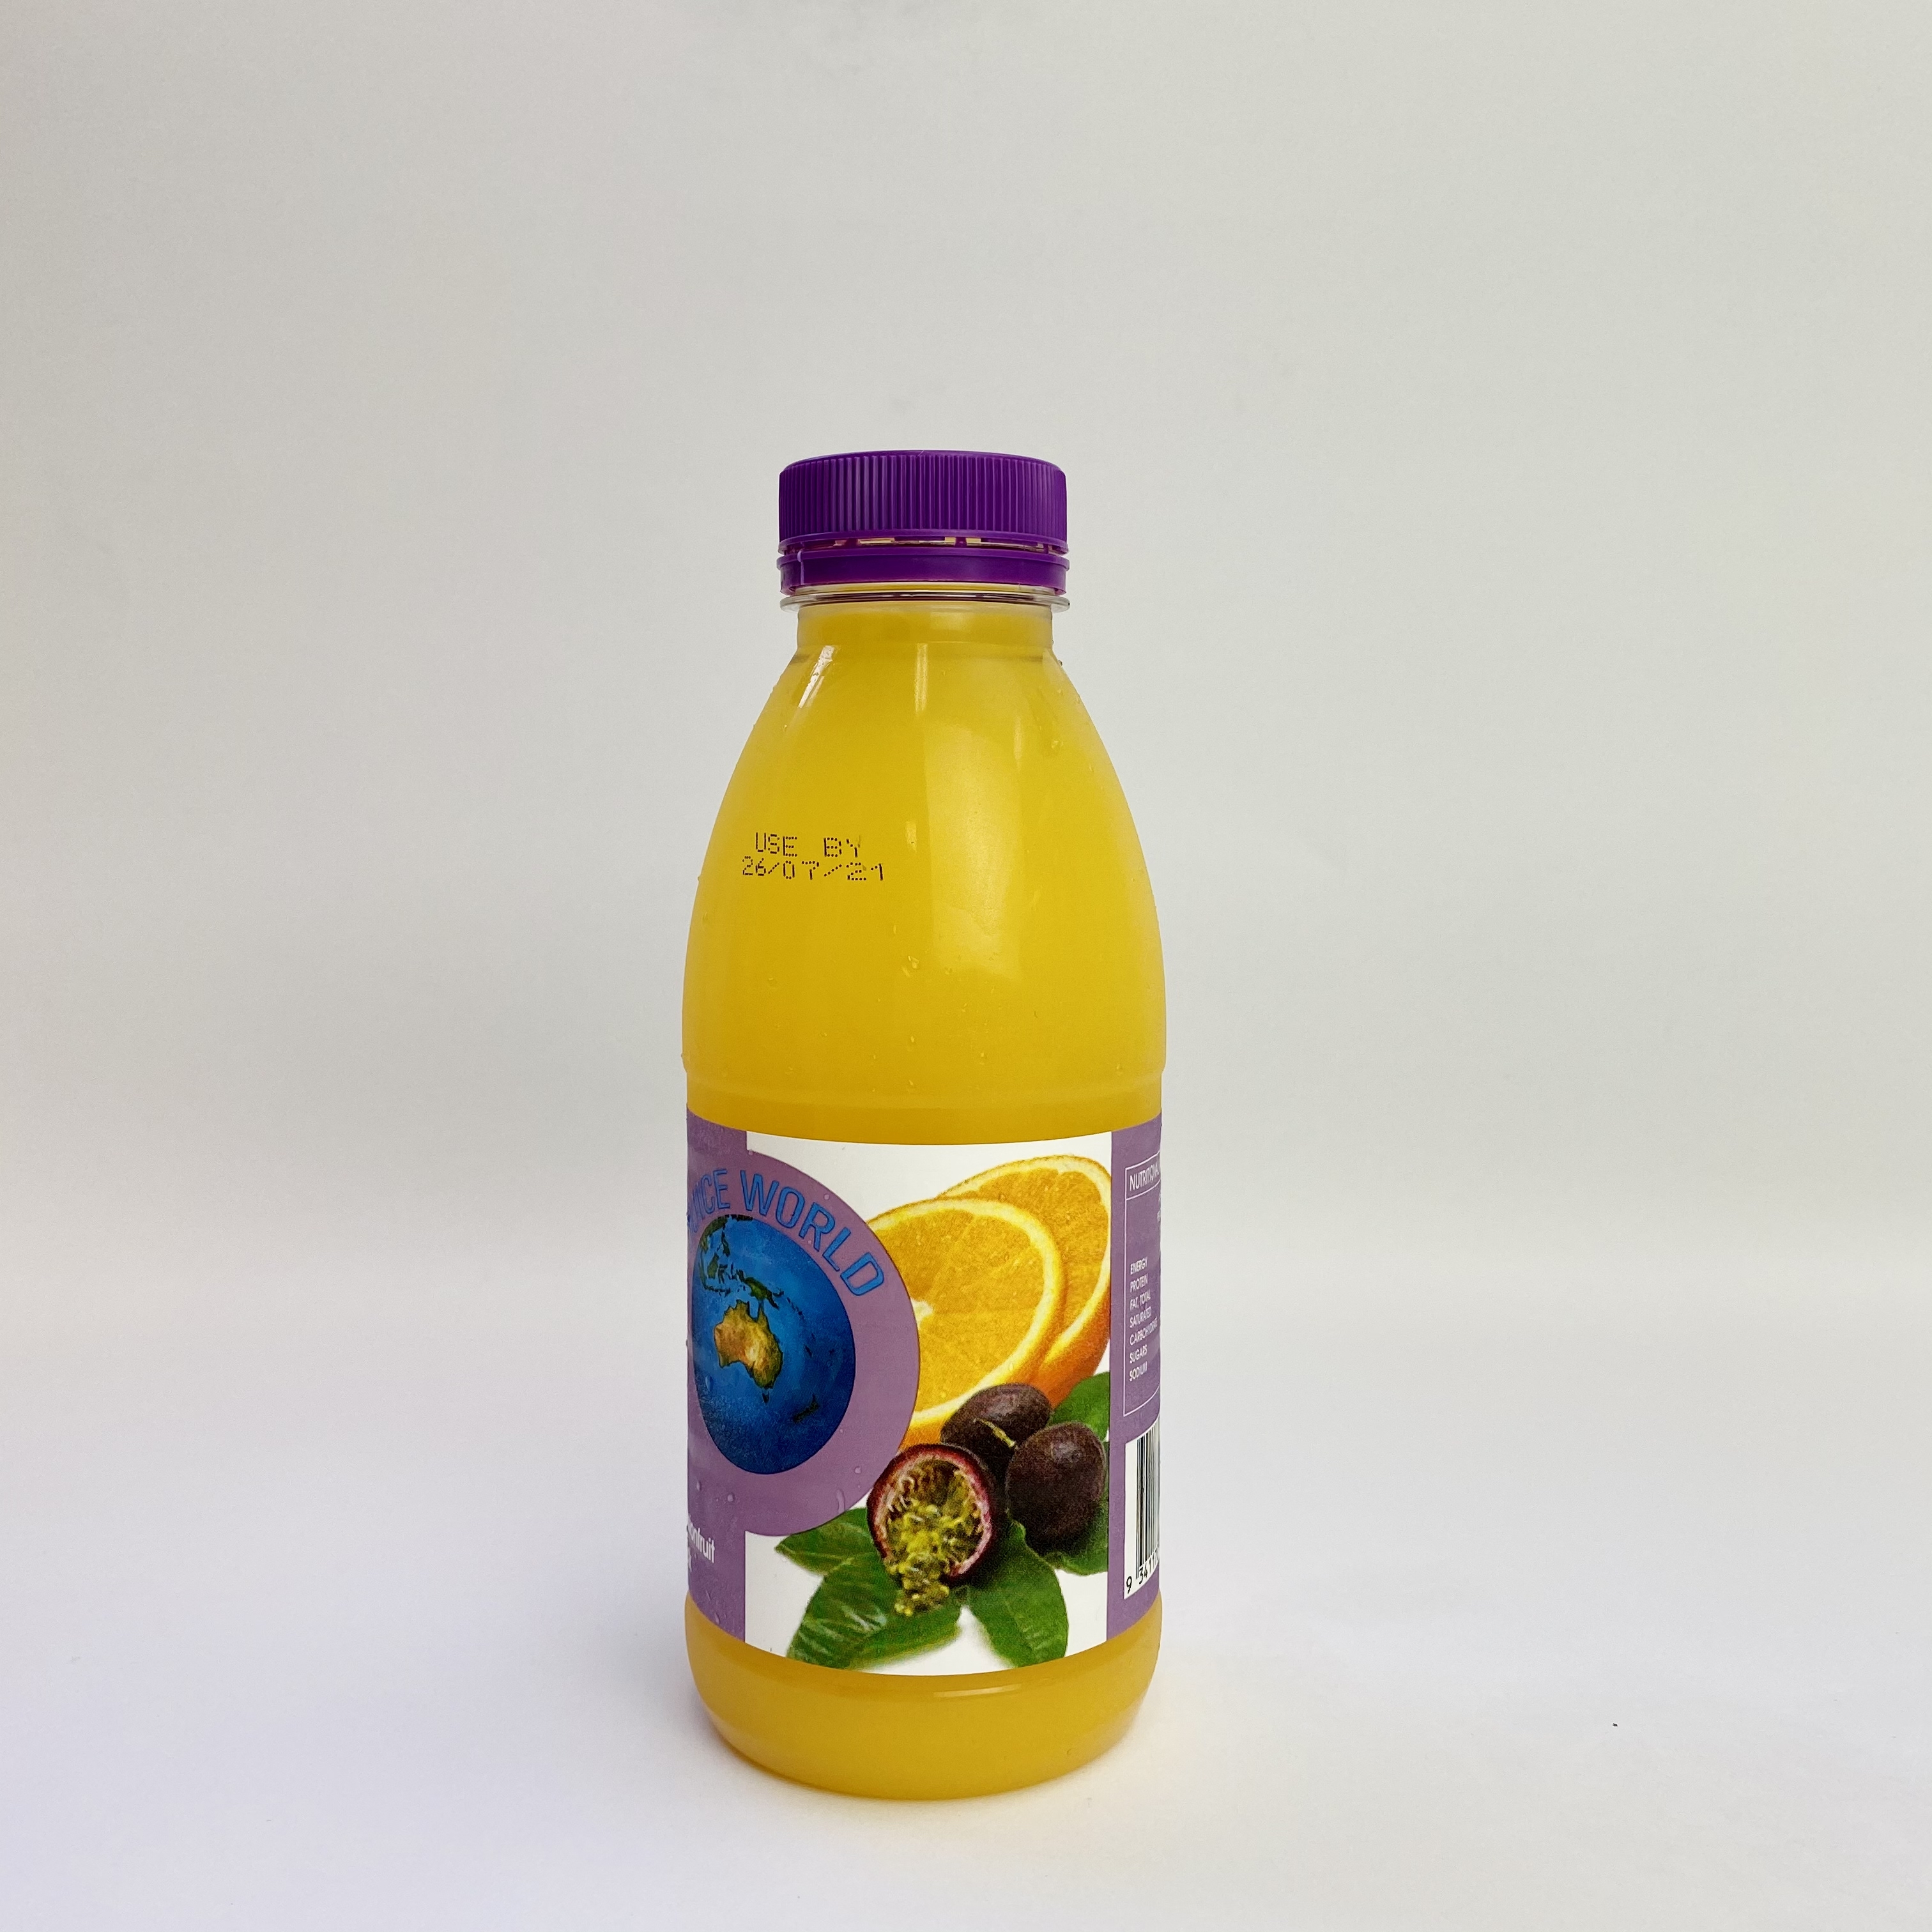 香橙百香果汁 Orange & passionfruit juice